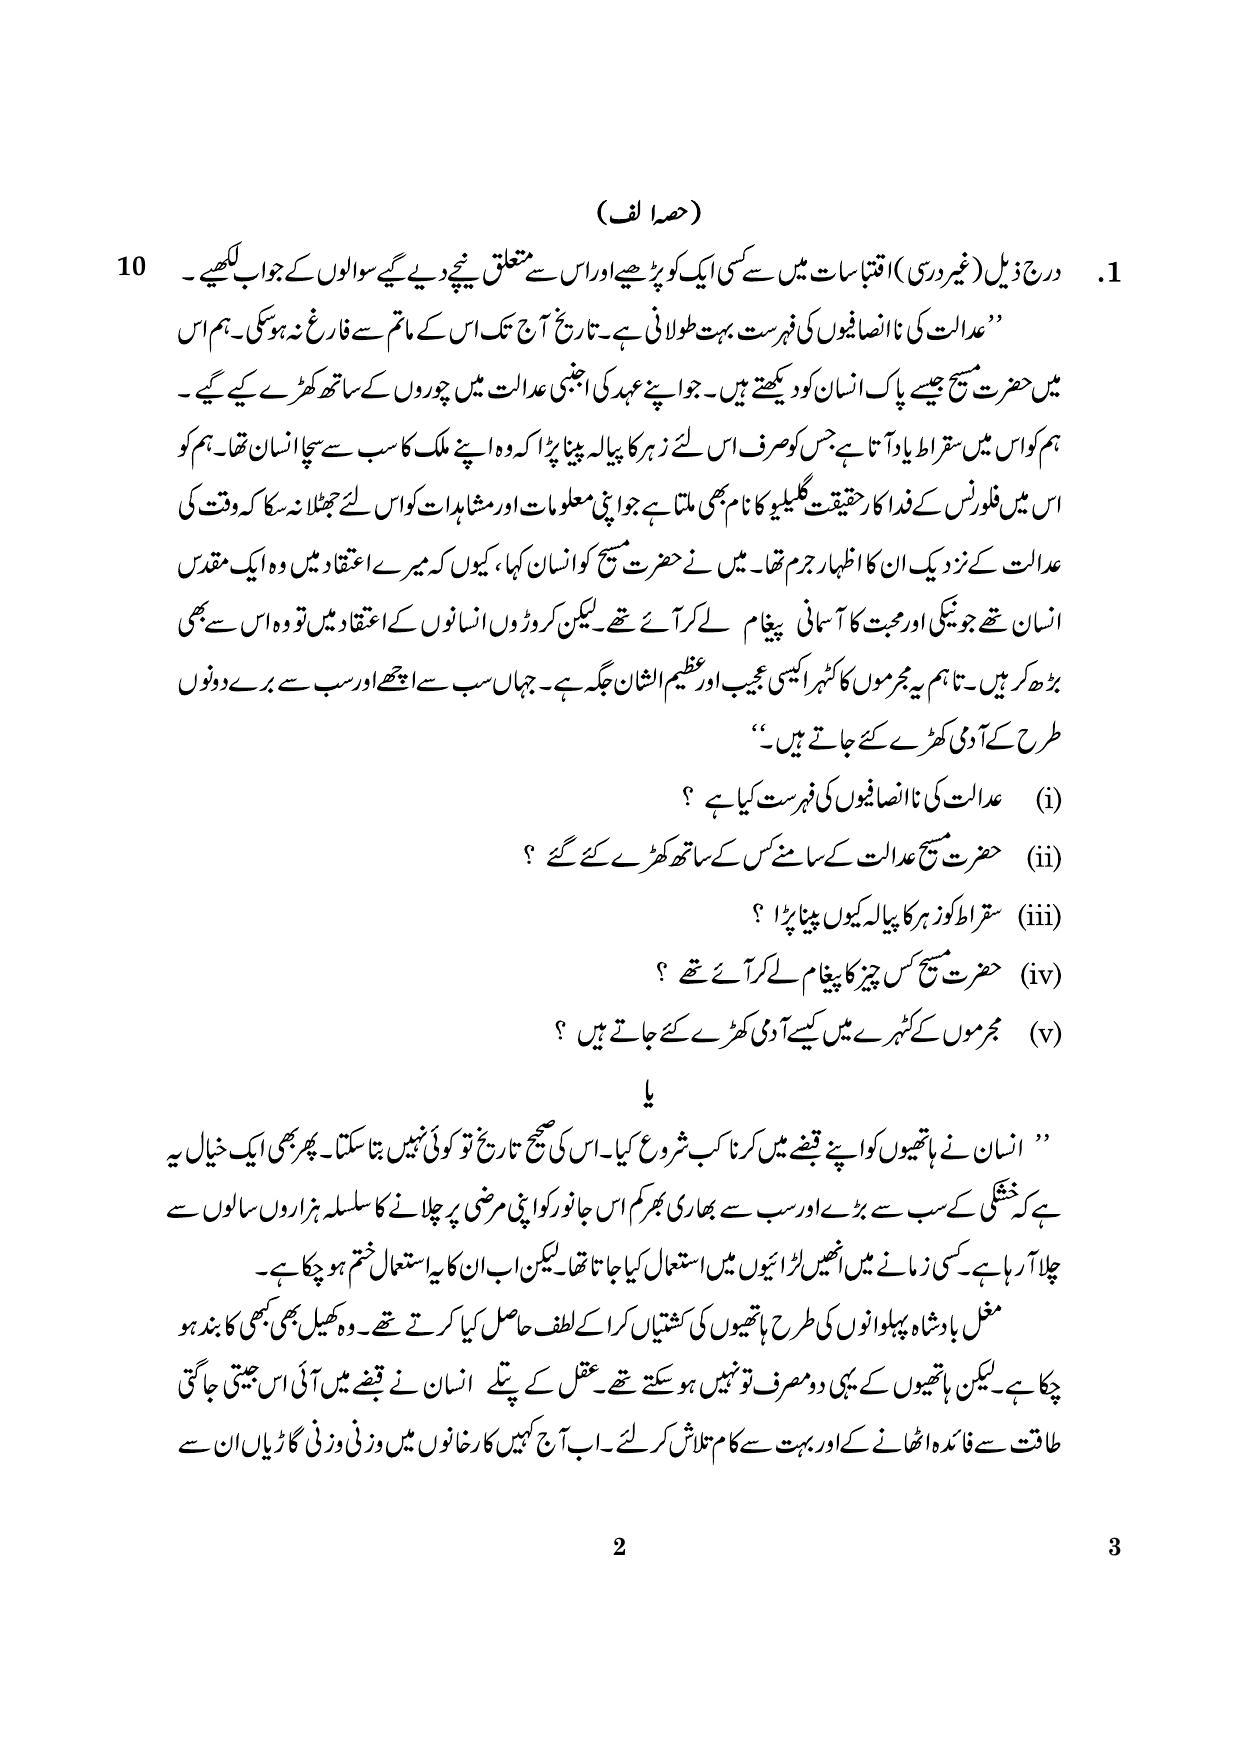 CBSE Class 12 003 Urdu Core 2016 Question Paper - Page 2